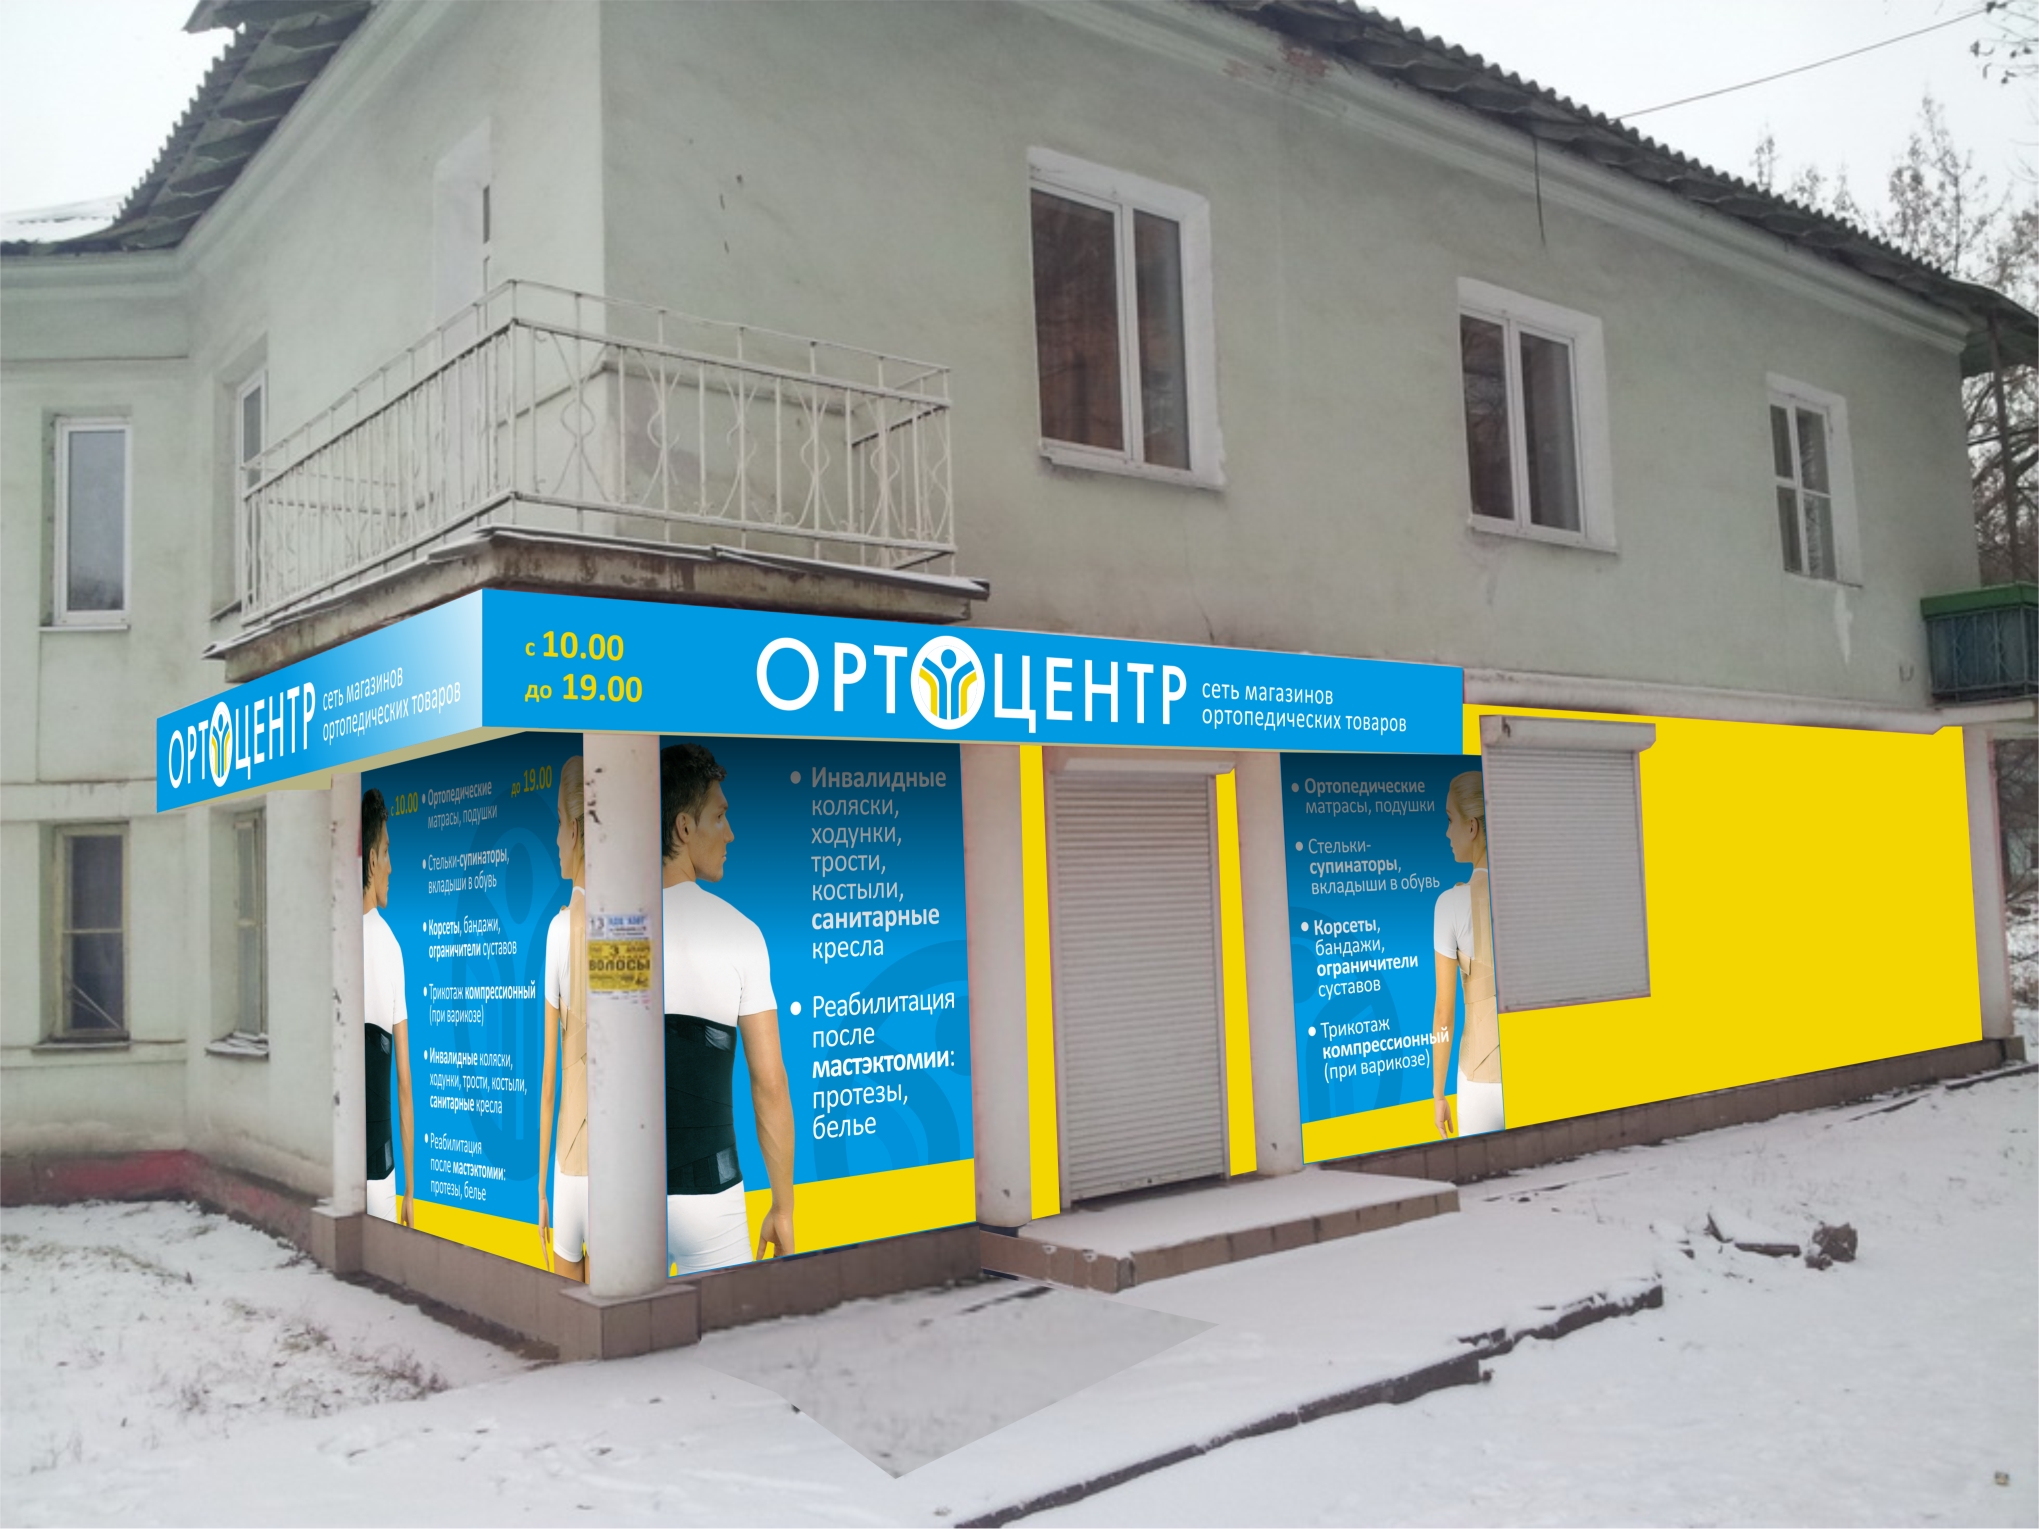 Оромление второго магазина ортопедических товаров «Ортоцентр»